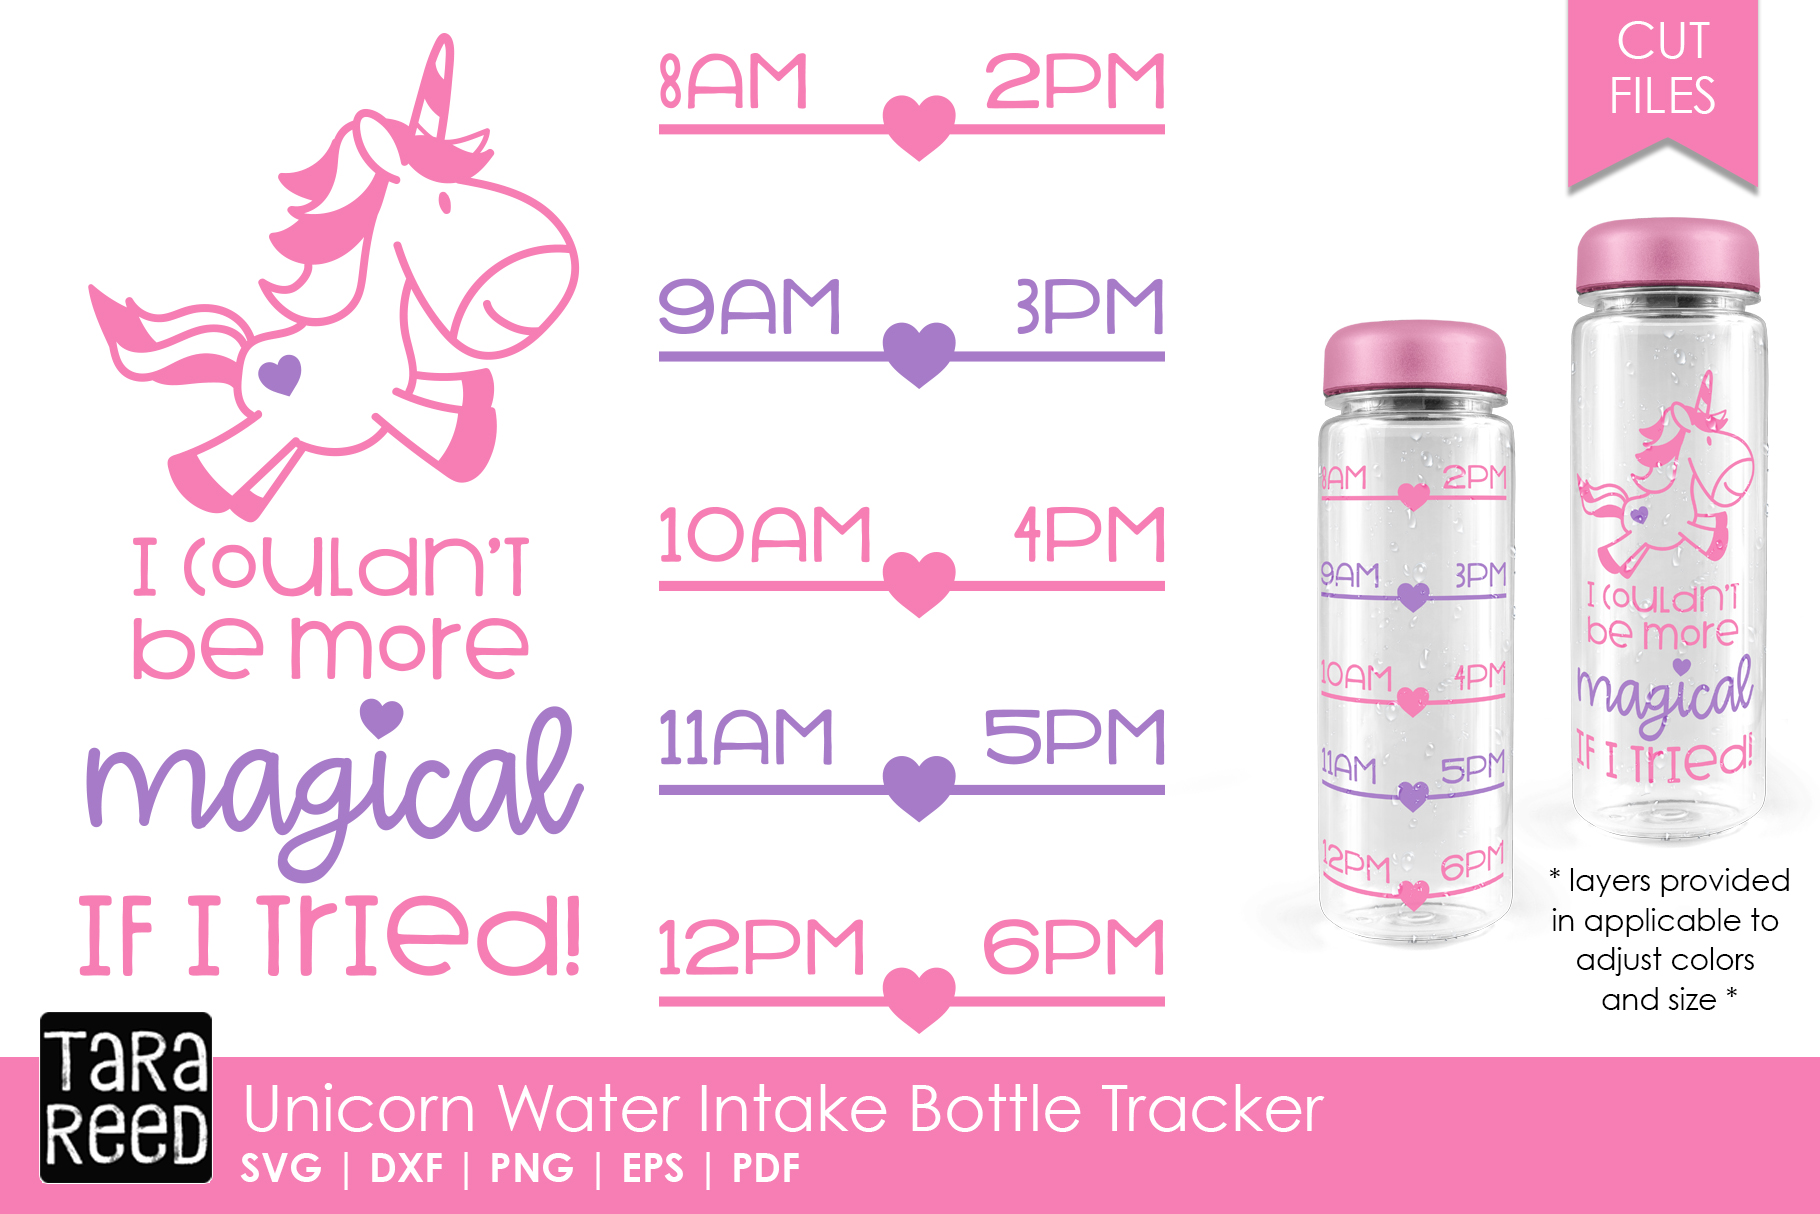 Download Unicorn Water Intake Bottle Tracker (148213) | Cut Files ...